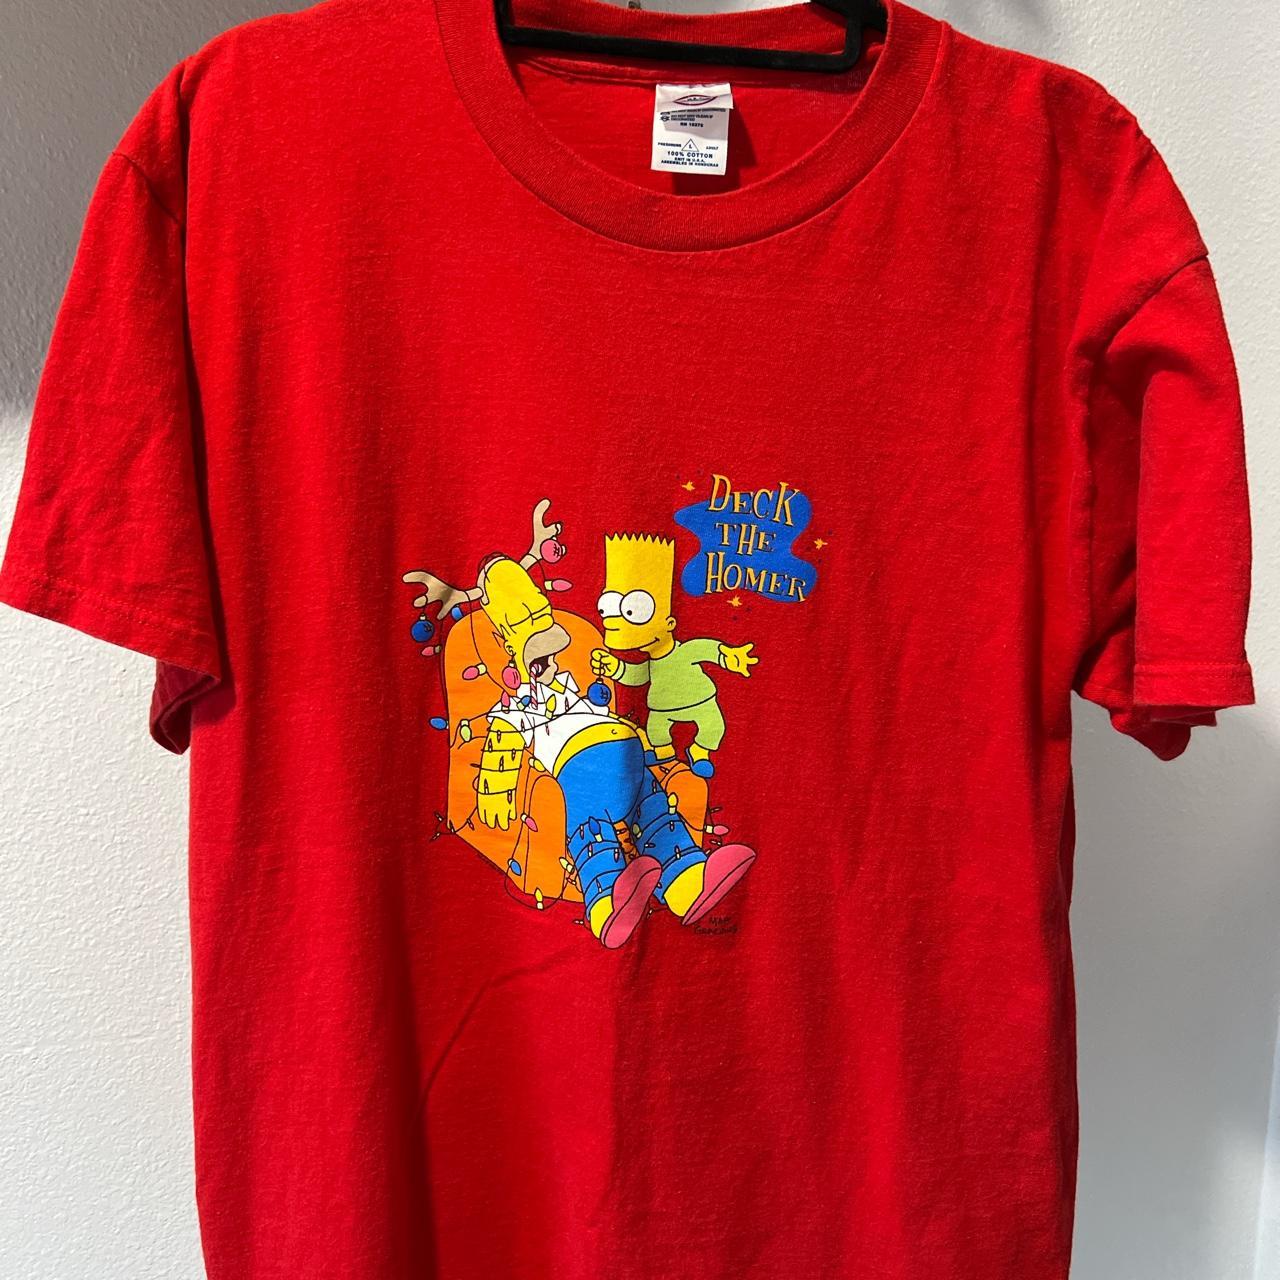 Delta Men's T-Shirt - Red - L